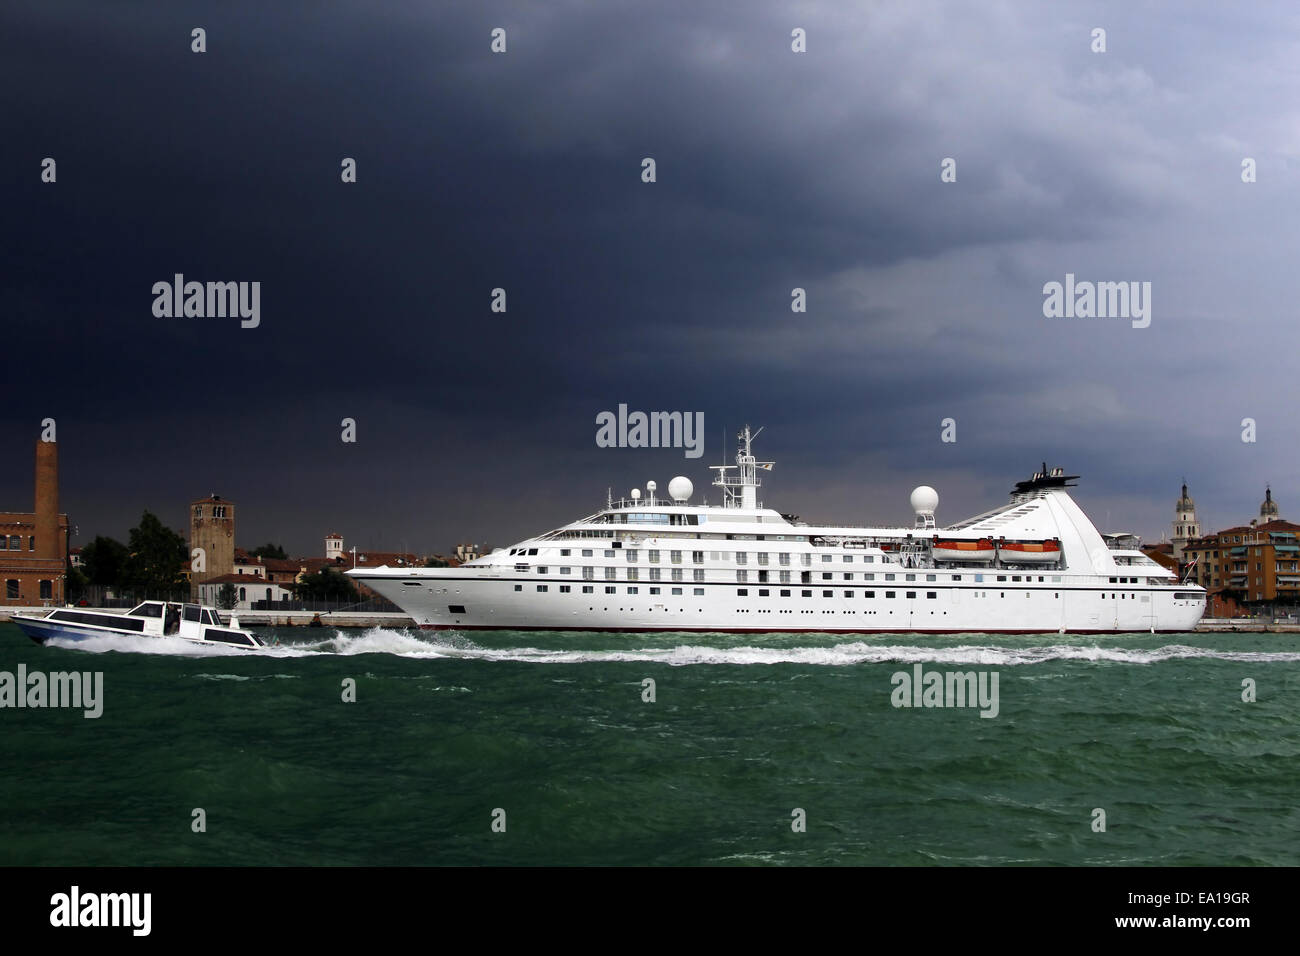 Grand navire de croisière et petit bateau-taxi sous ciel d'orage, Venise, Italie. Métaphore de la concurrence entre grandes et petites entreprises Banque D'Images